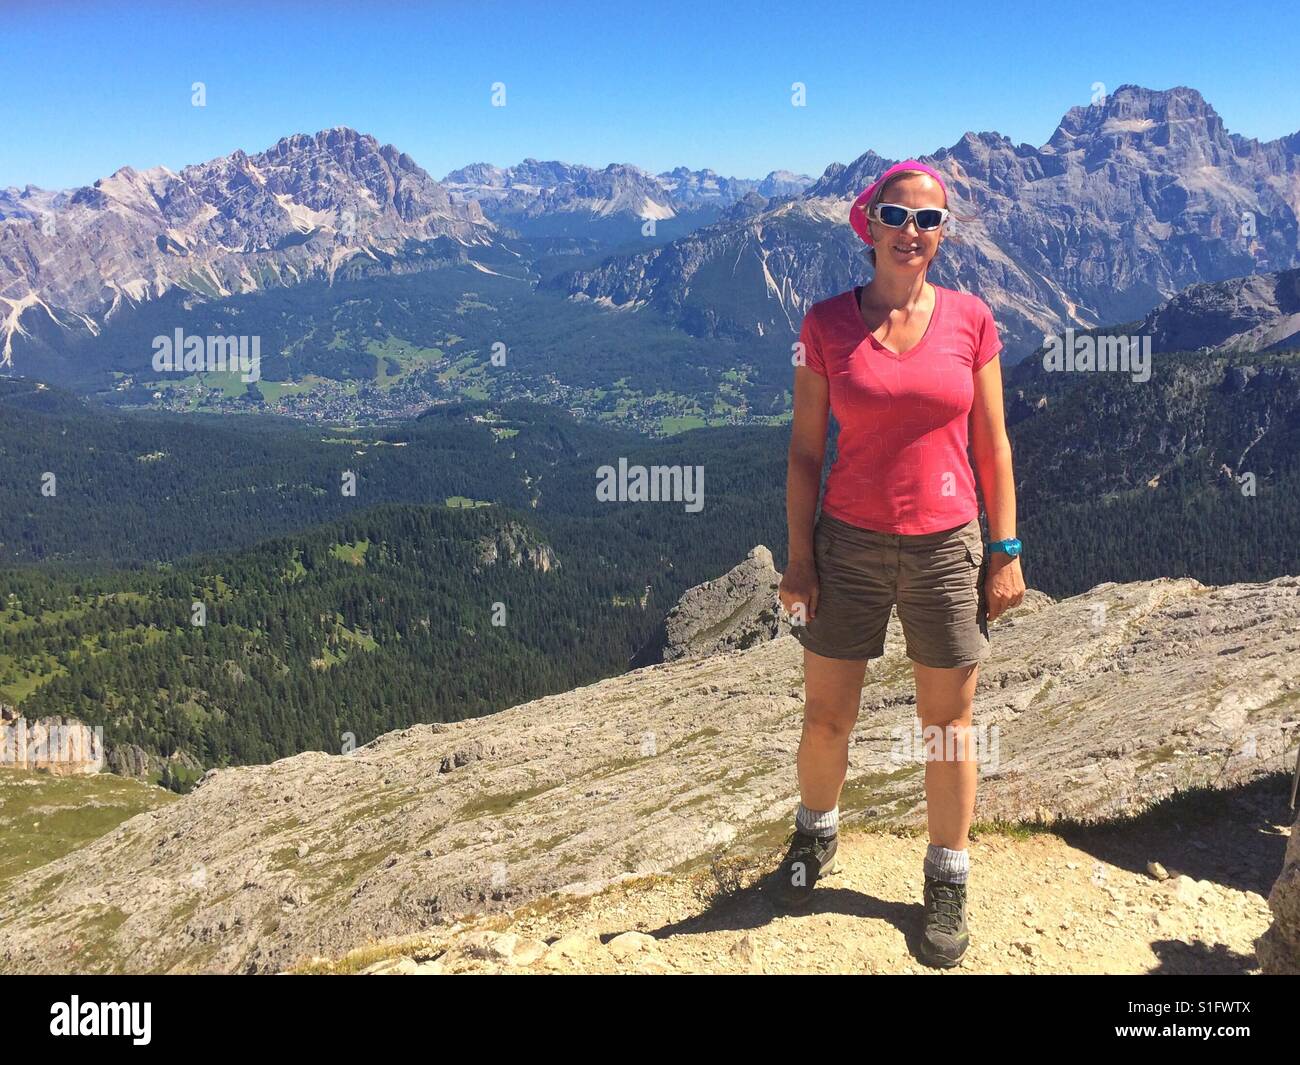 Femme sur le sommet d'une montagne. Nuvolau, Cortina d'Ampezzo, Italie Banque D'Images